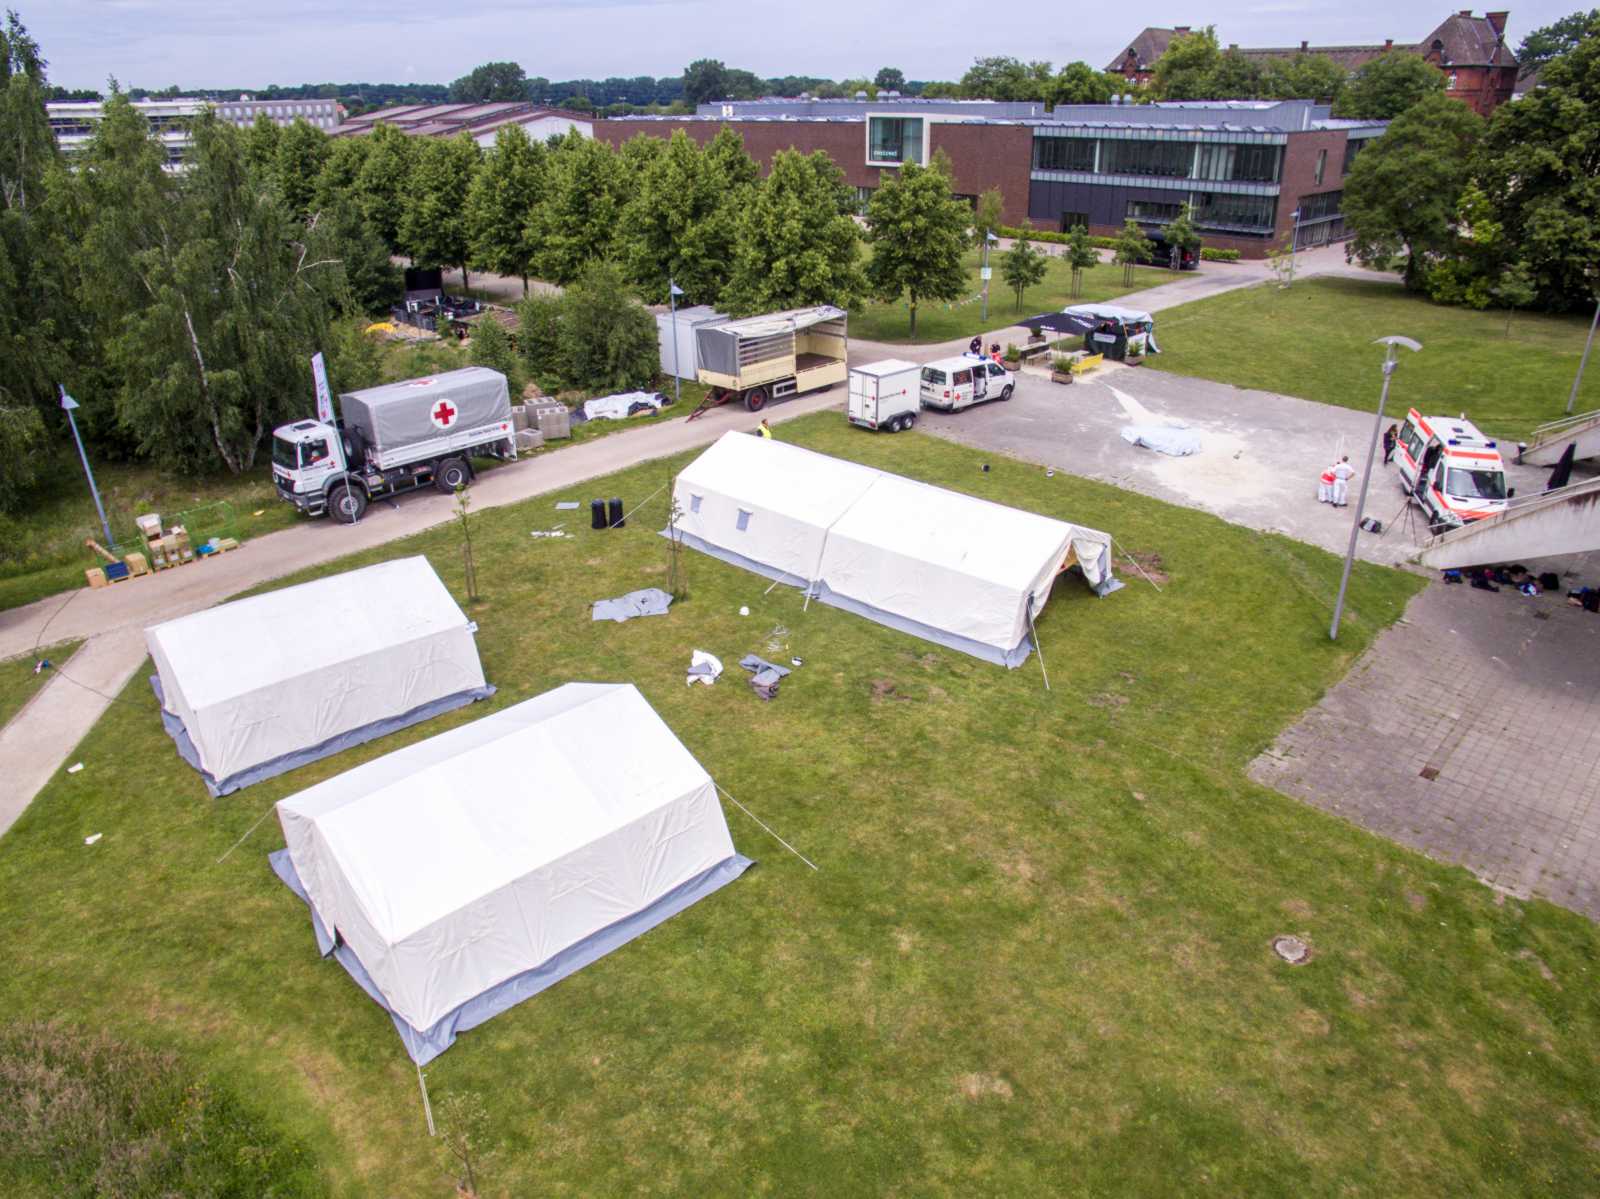 Bei der Praxisübung Humanitäre Hilfe bauen die Teilnehmer ein mobiles Zelthospital auf und erhalten einen praktischen Einblick in die Arbeit von Hilfsorganisationen. (Archivbild: FH Münster/Online-Redaktion)